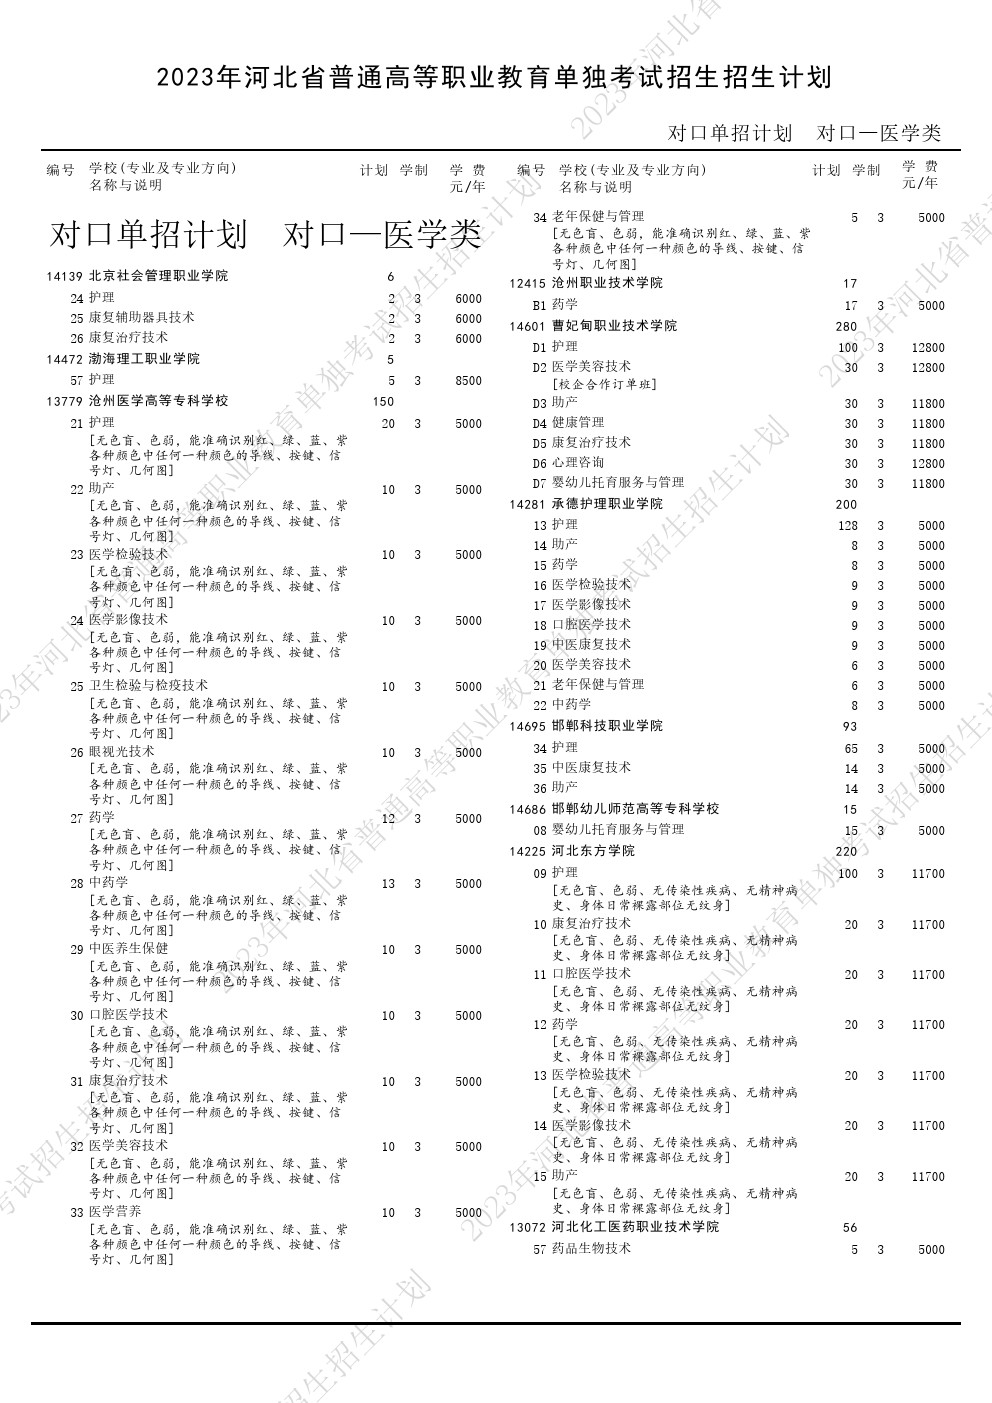 2023年河北省高职单招考试对口医学类招生计划